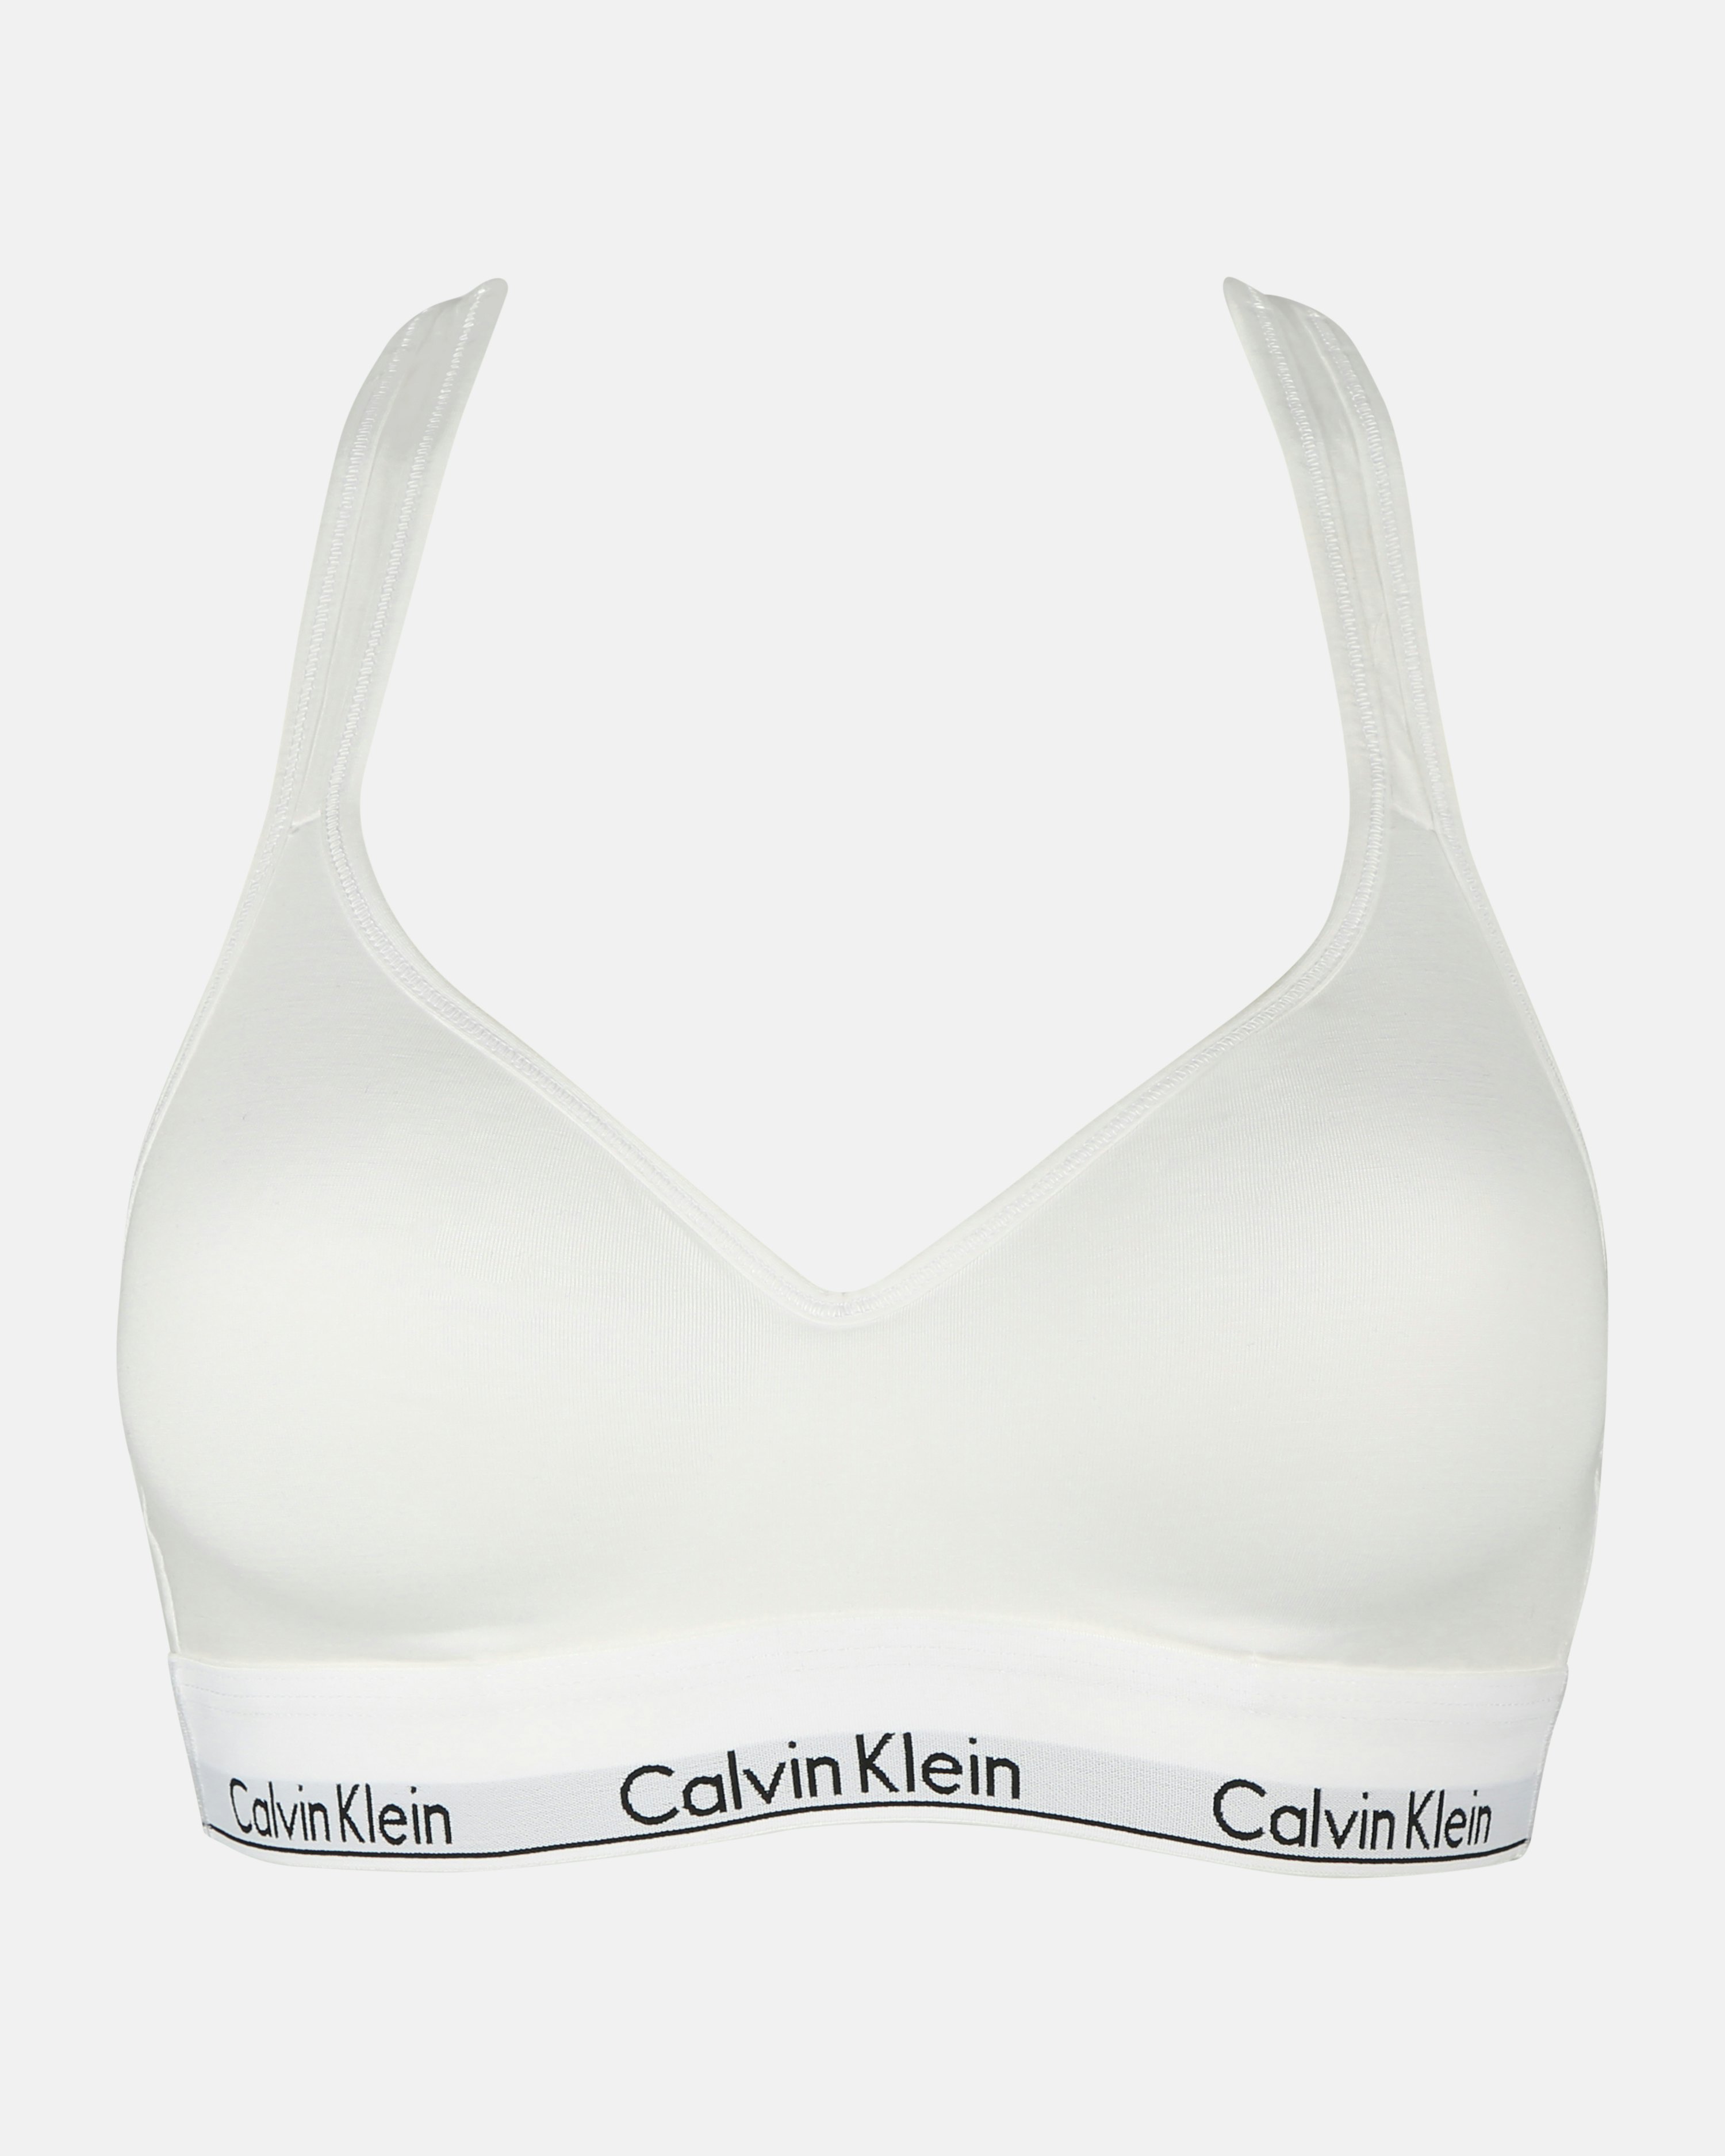 CALVIN KLEIN UNDERWEAR Calvin Klein MODERN COTTON - Sports Bra - Women's -  white - Private Sport Shop